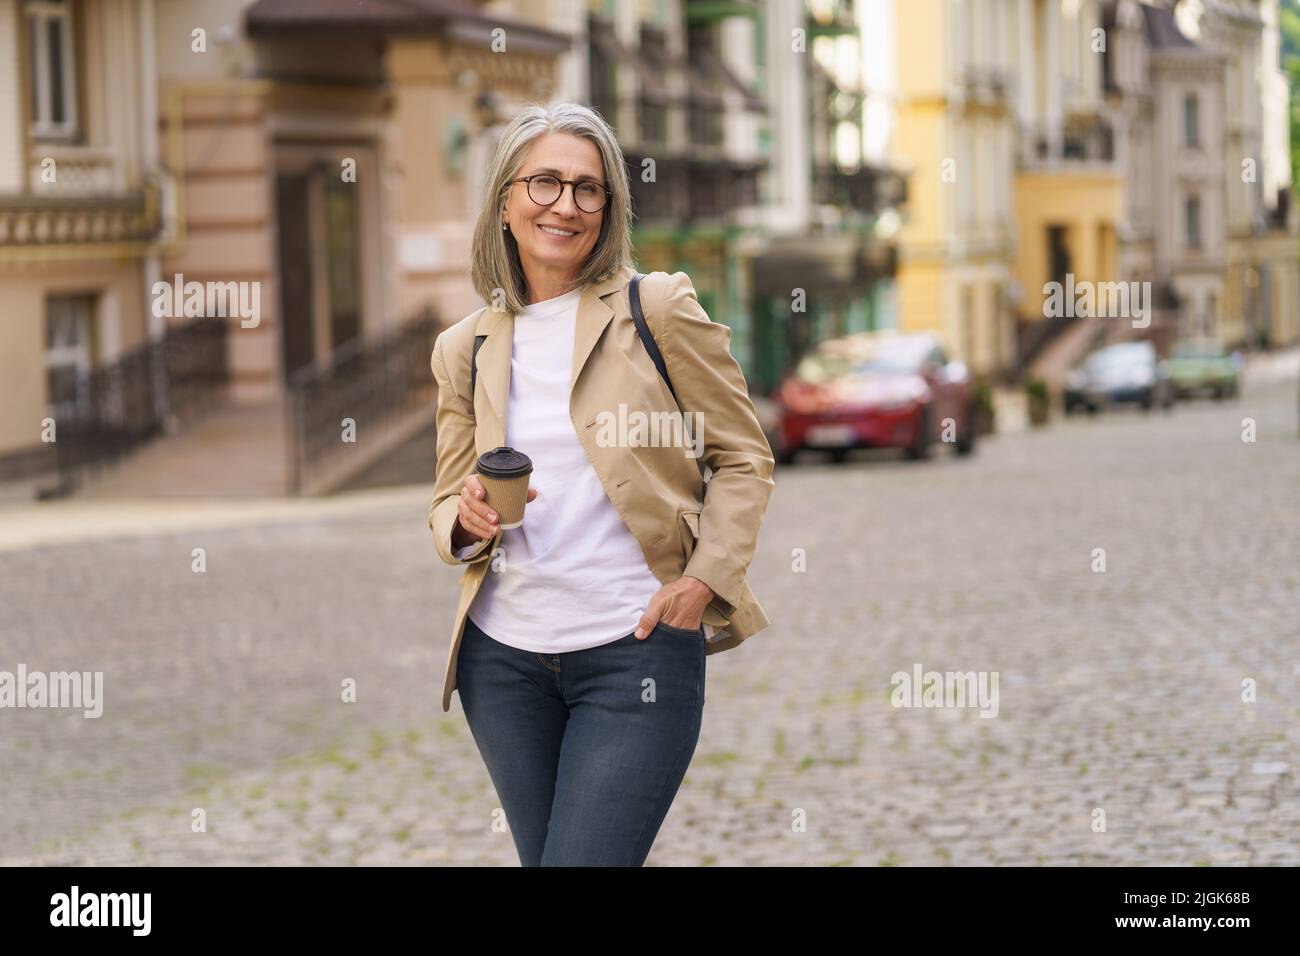 Reife Geschäftsfrau in lässig formell halten Einweg-Tasse mit heißem Kaffee steht im Freien der Altstadt. Die reife Frau verbringt ihre Freizeit in der europäischen Stadt und genießt eine Tasse Tee und Kaffee. Stockfoto